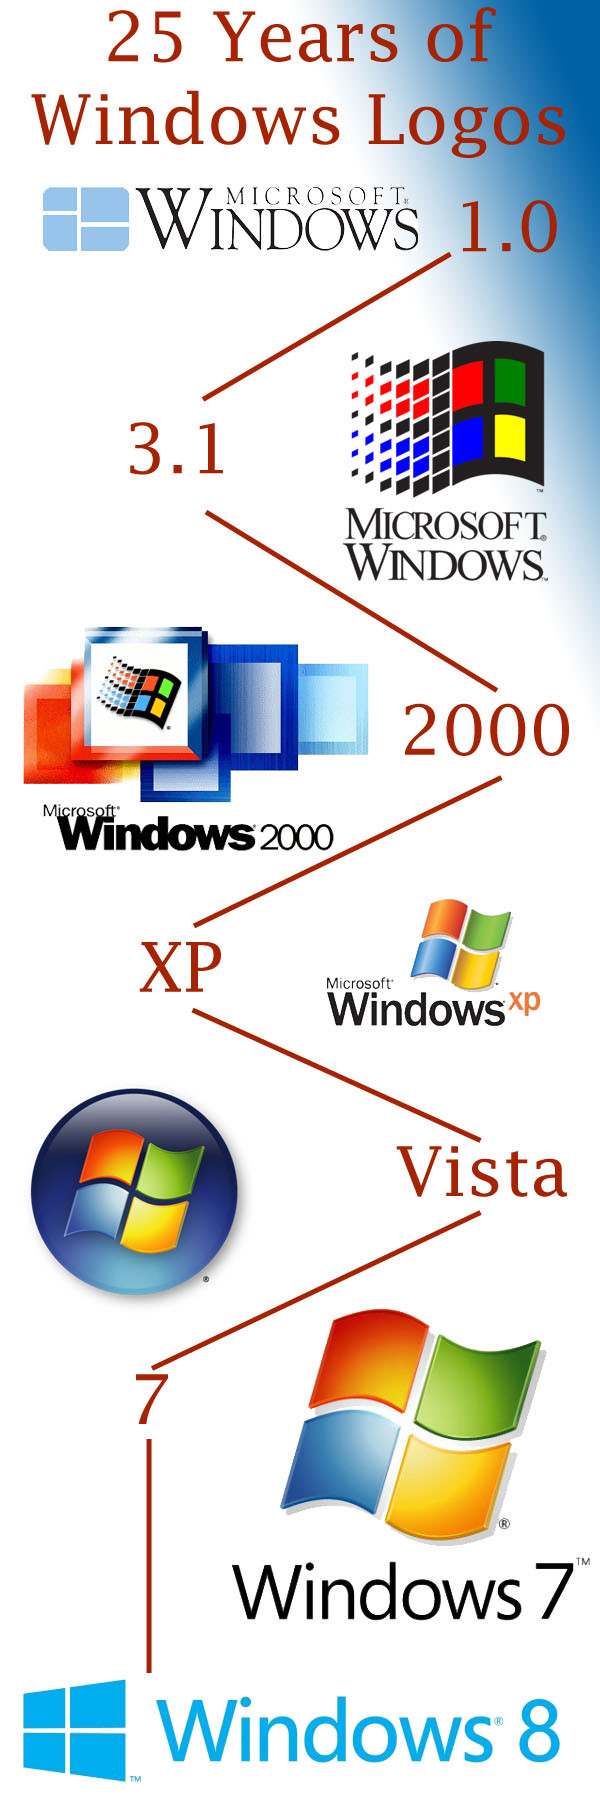 Новый логотип для Windows 8 в стиле Metro